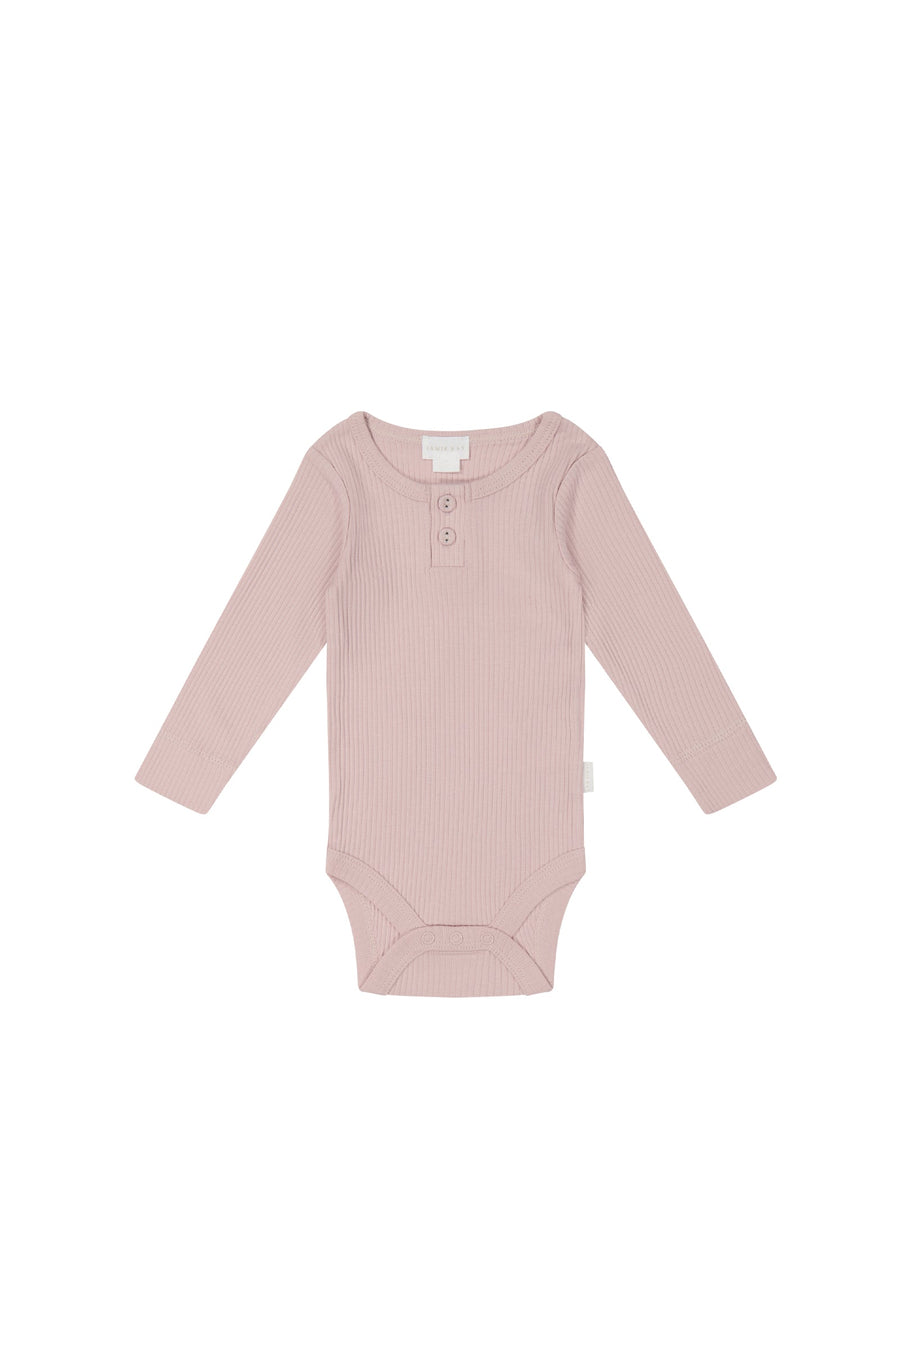 Organic Cotton Modal Elastane Long Sleeve Bodysuit - Powder Pink - Baby Bodysuit at Jamie Kay